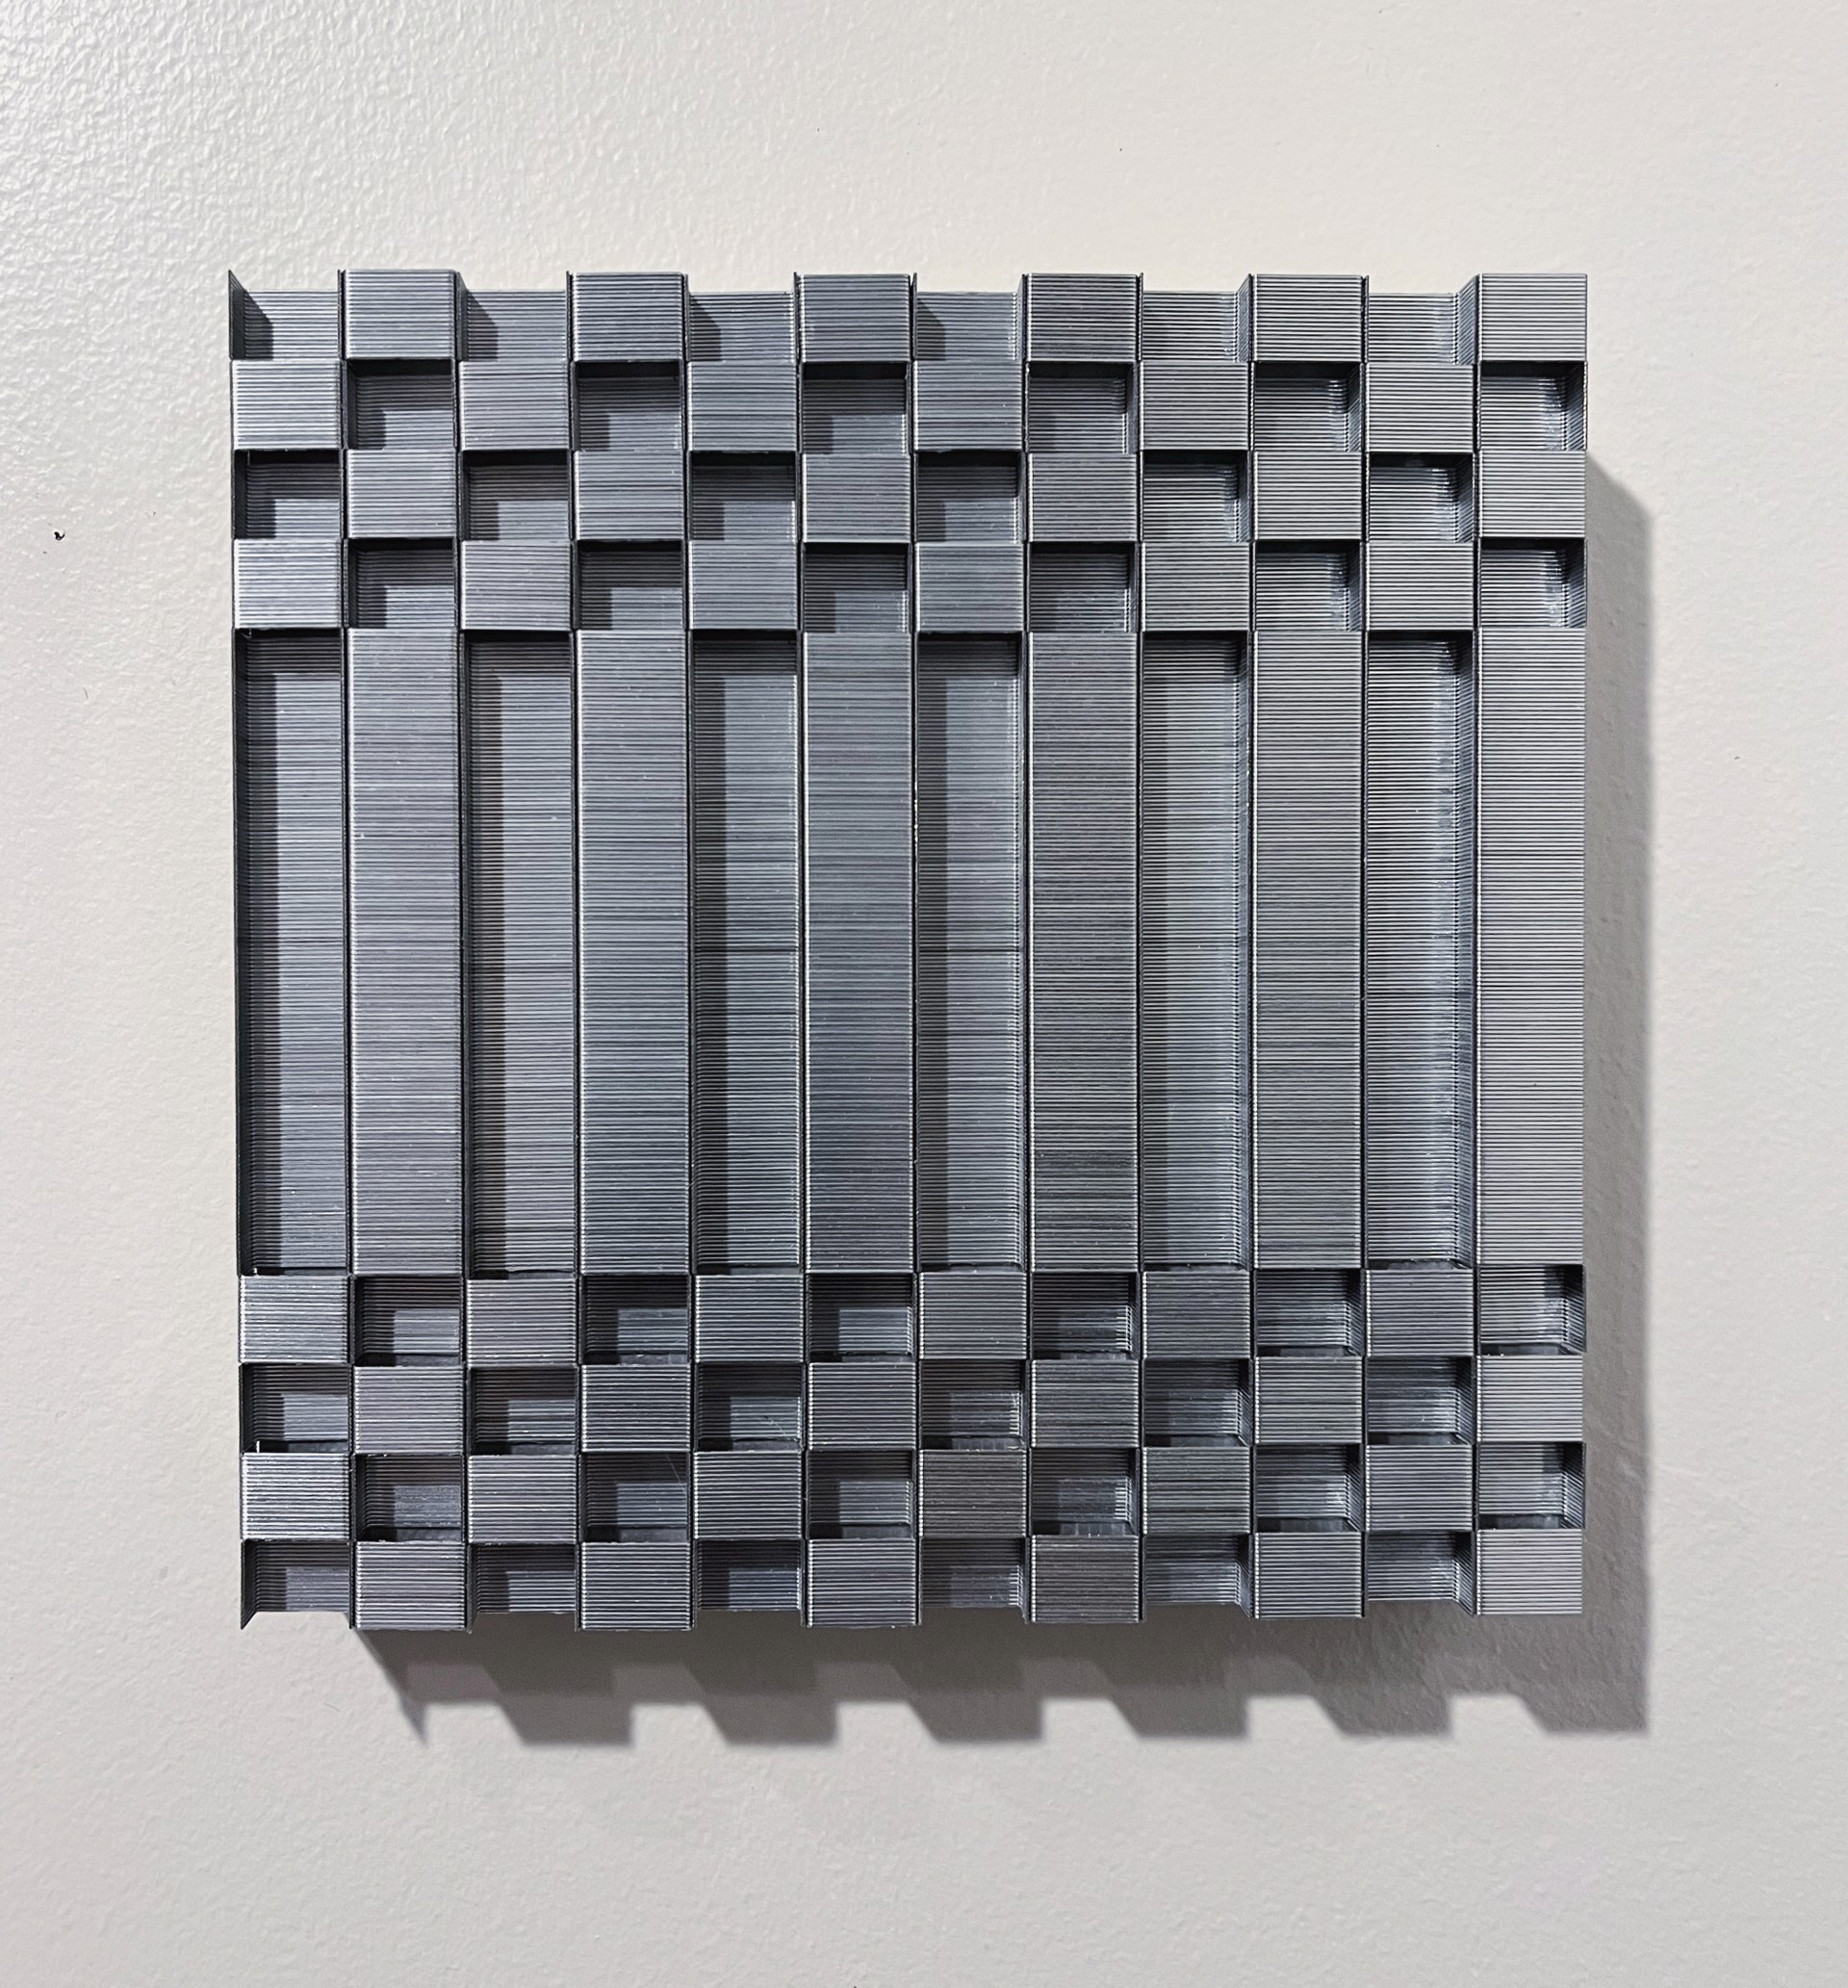 Checkerboard Variation  6x6 No. 8 by Evan Stoler